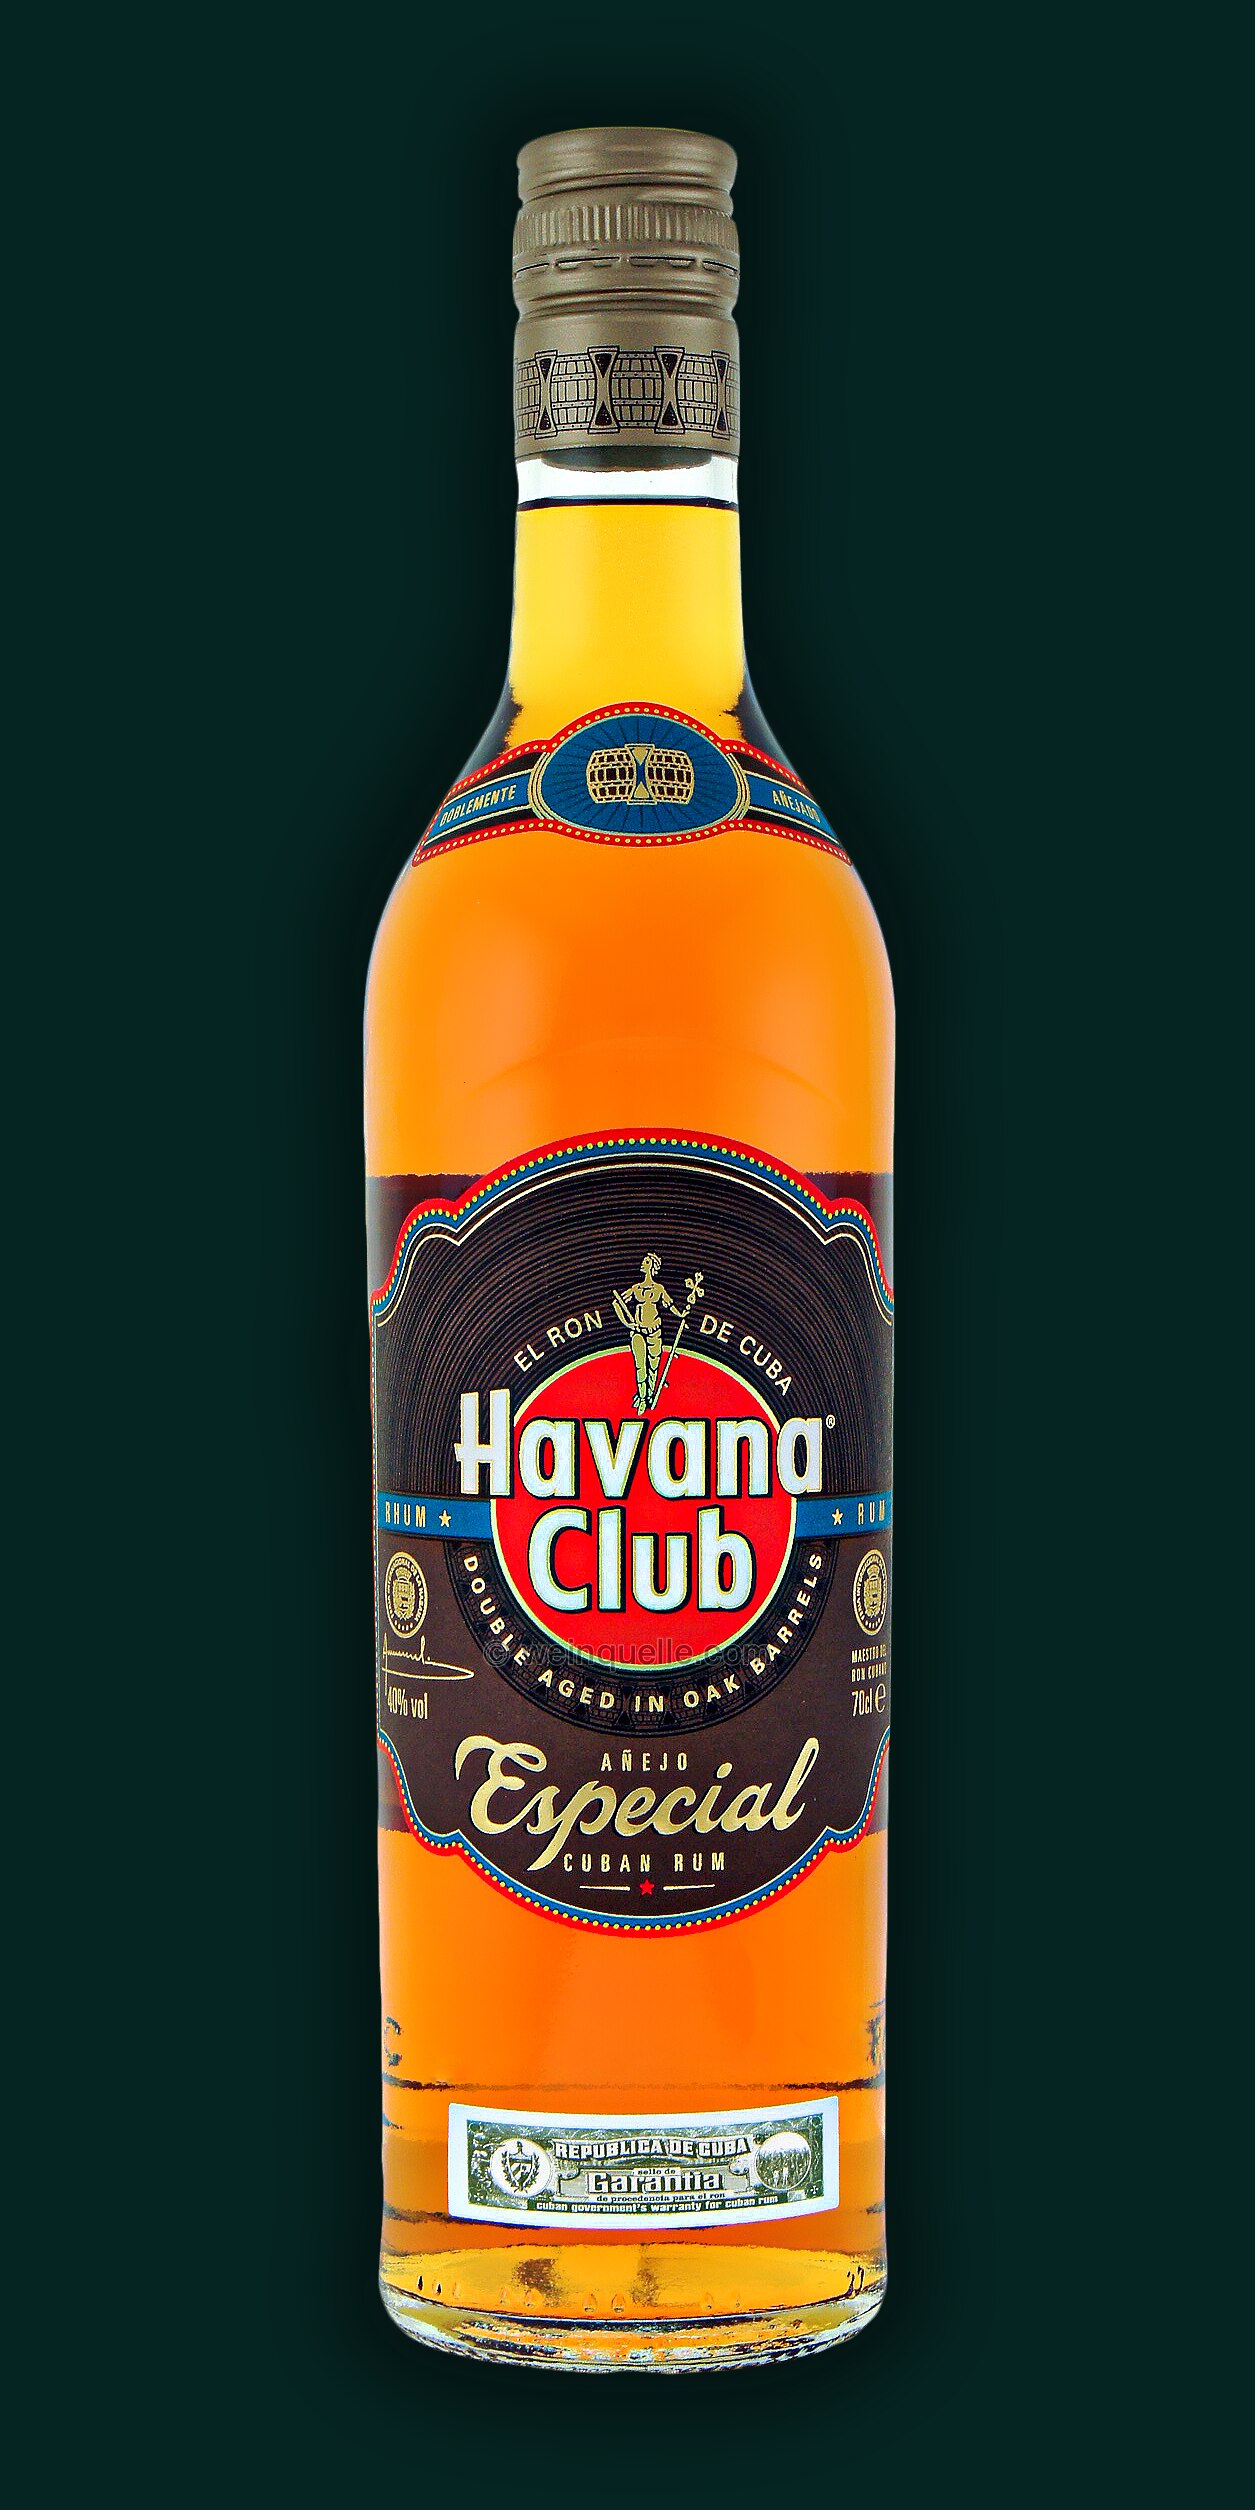 € Havana 17,25 Anejo Club Lühmann - Especial, Weinquelle